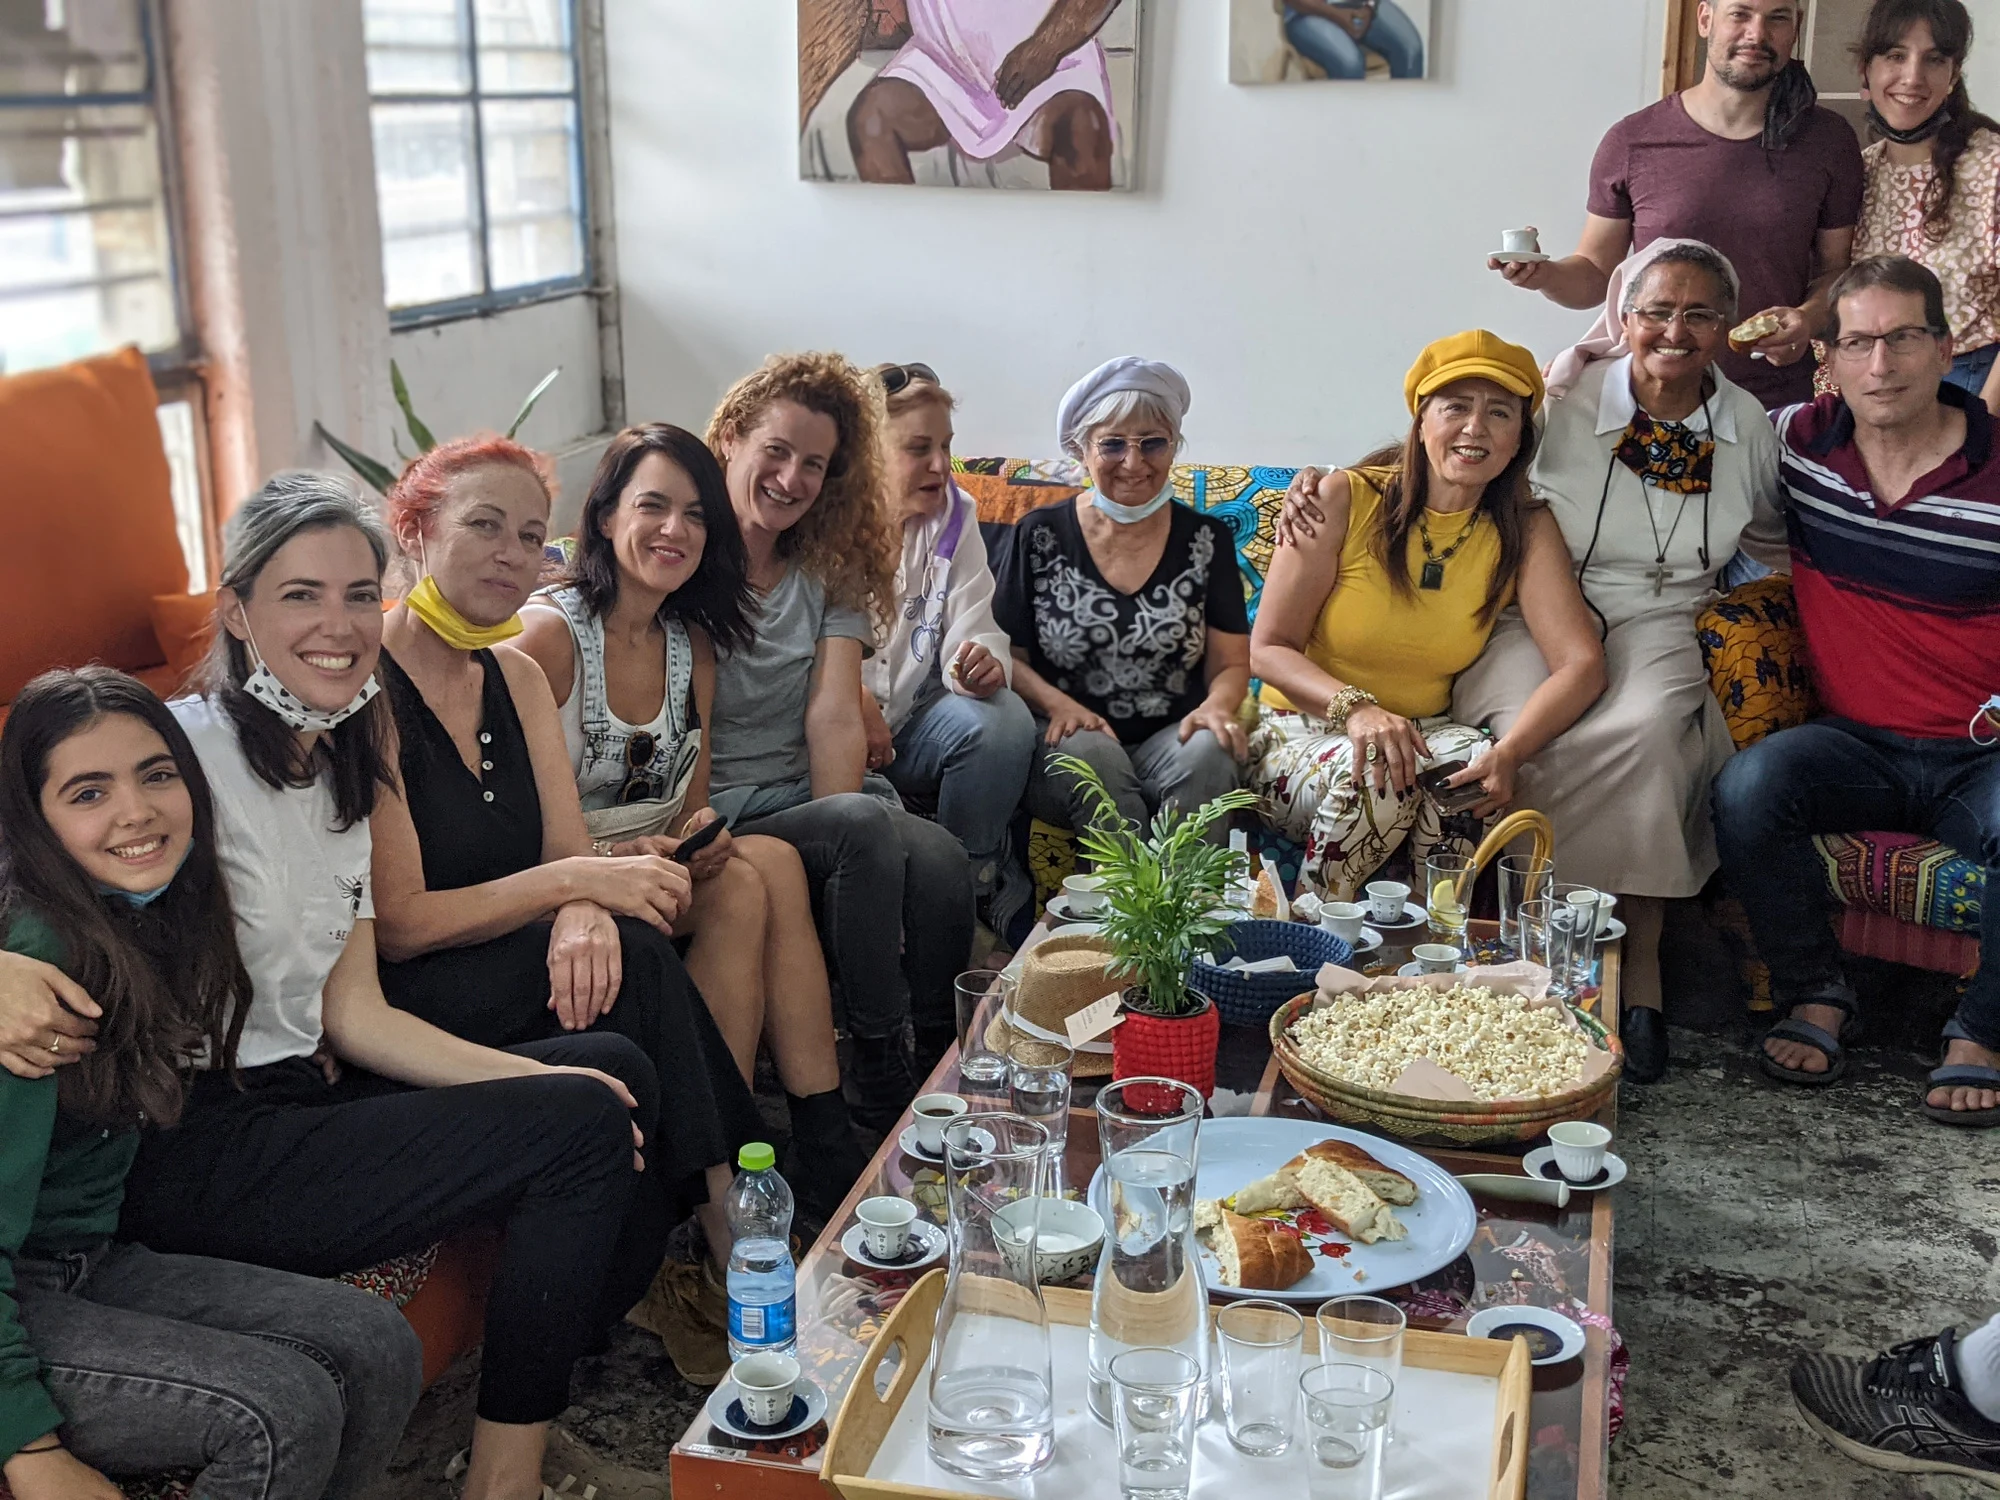 הדס שמואלי- אירוח בקולקטיב נשים אפריקאיות בדרום תל אביב